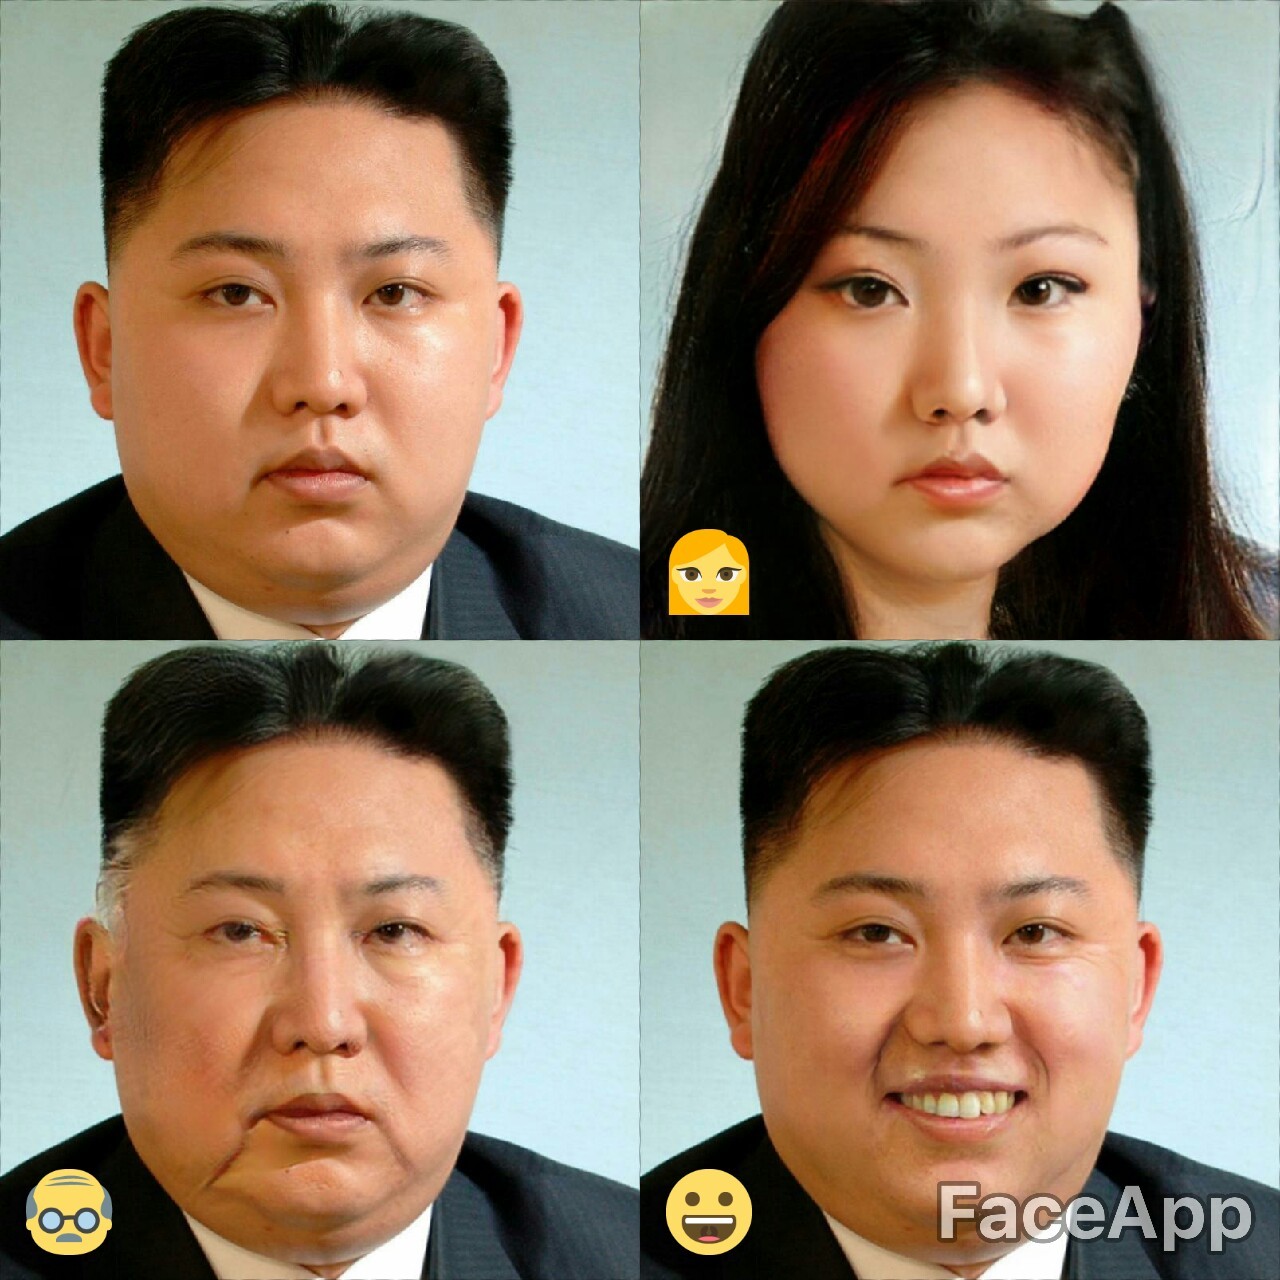 Is It Weird That I Kinda Wanna Kim Jong Un Now